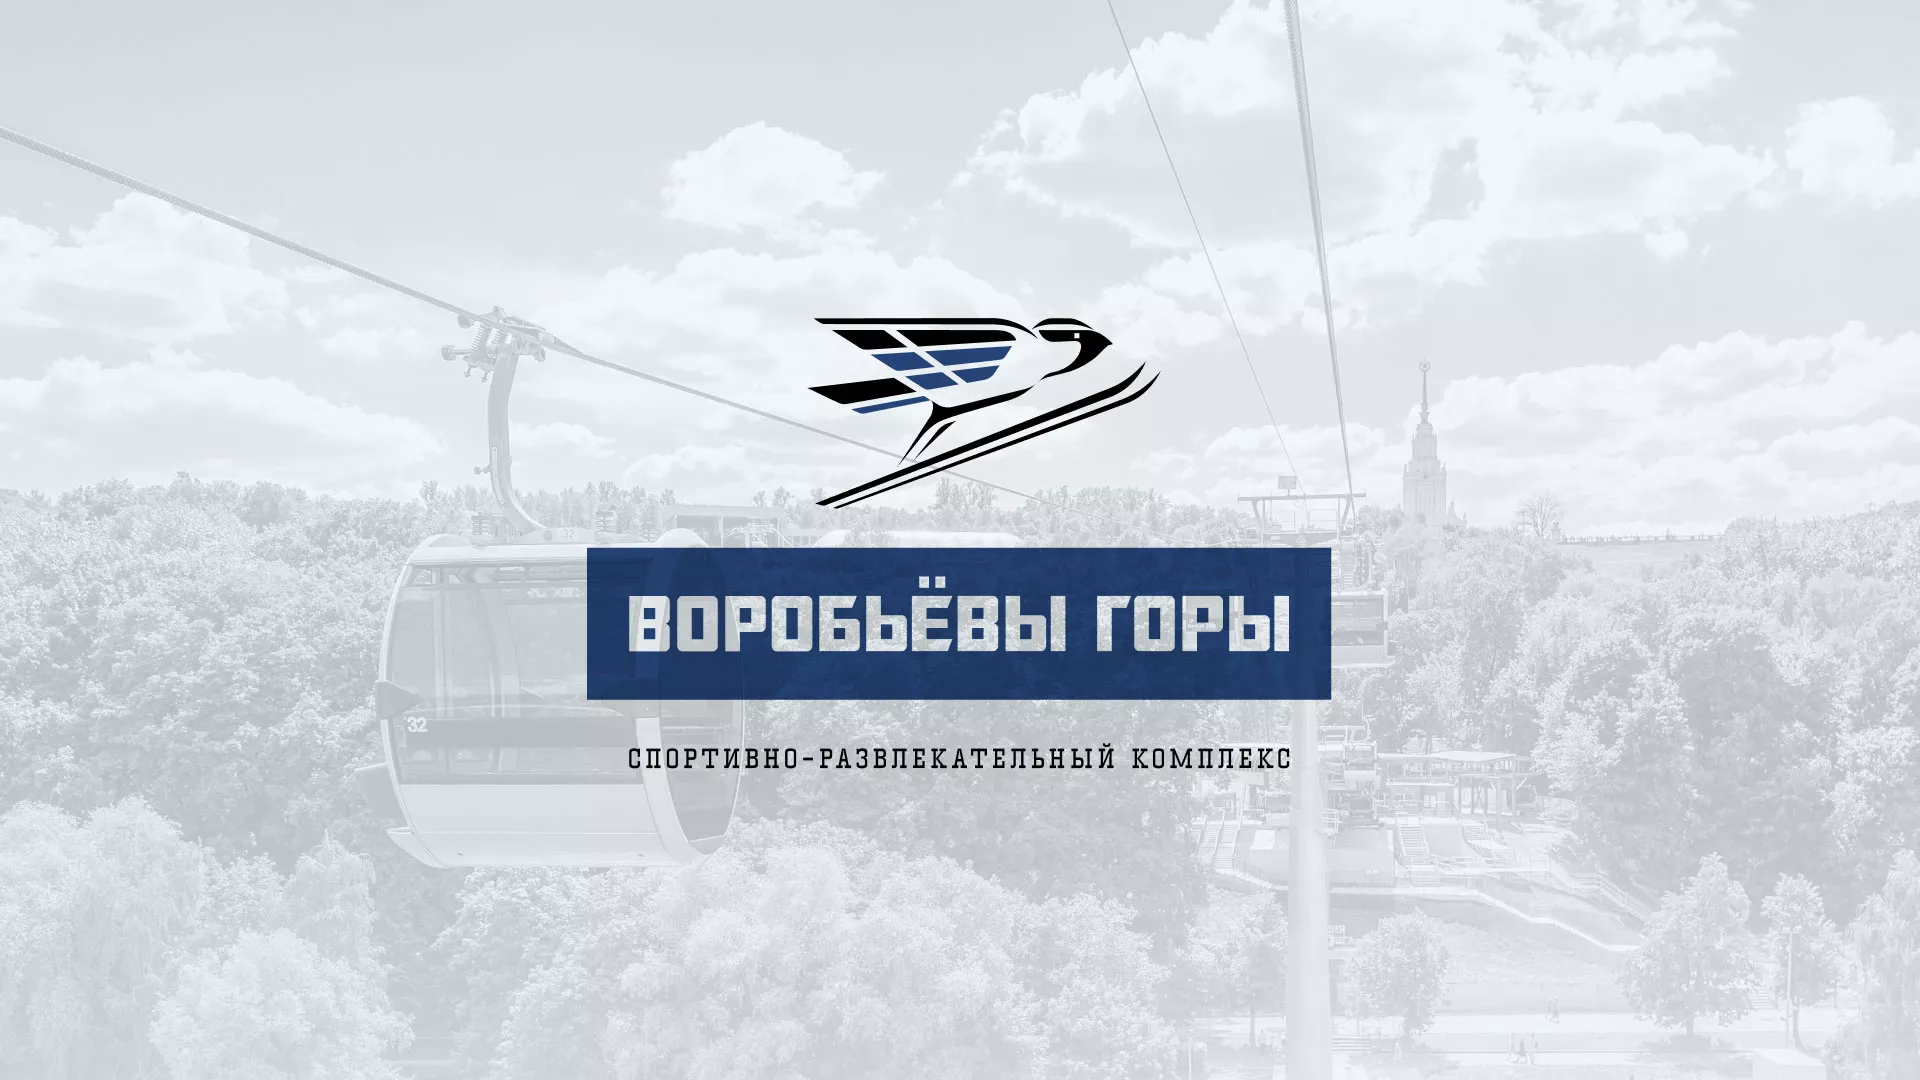 Разработка сайта в Снежинске для спортивно-развлекательного комплекса «Воробьёвы горы»